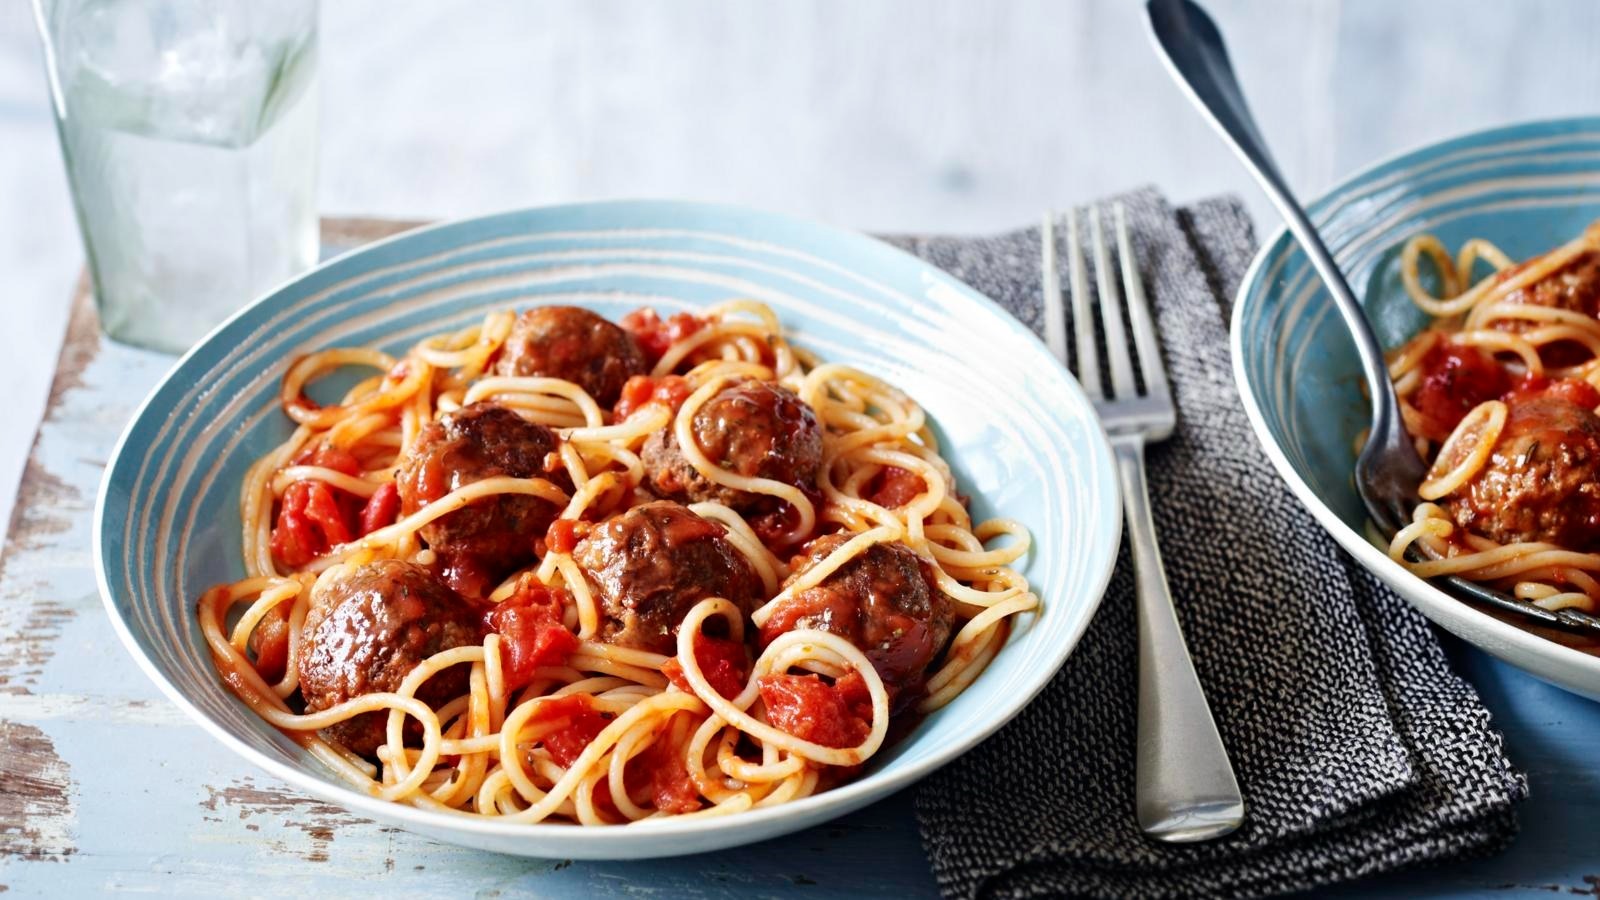 Some spaghetti. Спагетти с мясными шариками в томатном соусе. Макароны с мясом в томатном соусе. Спагетти с тефтелями в томатном соусе. Фрикадельки со спагетти.